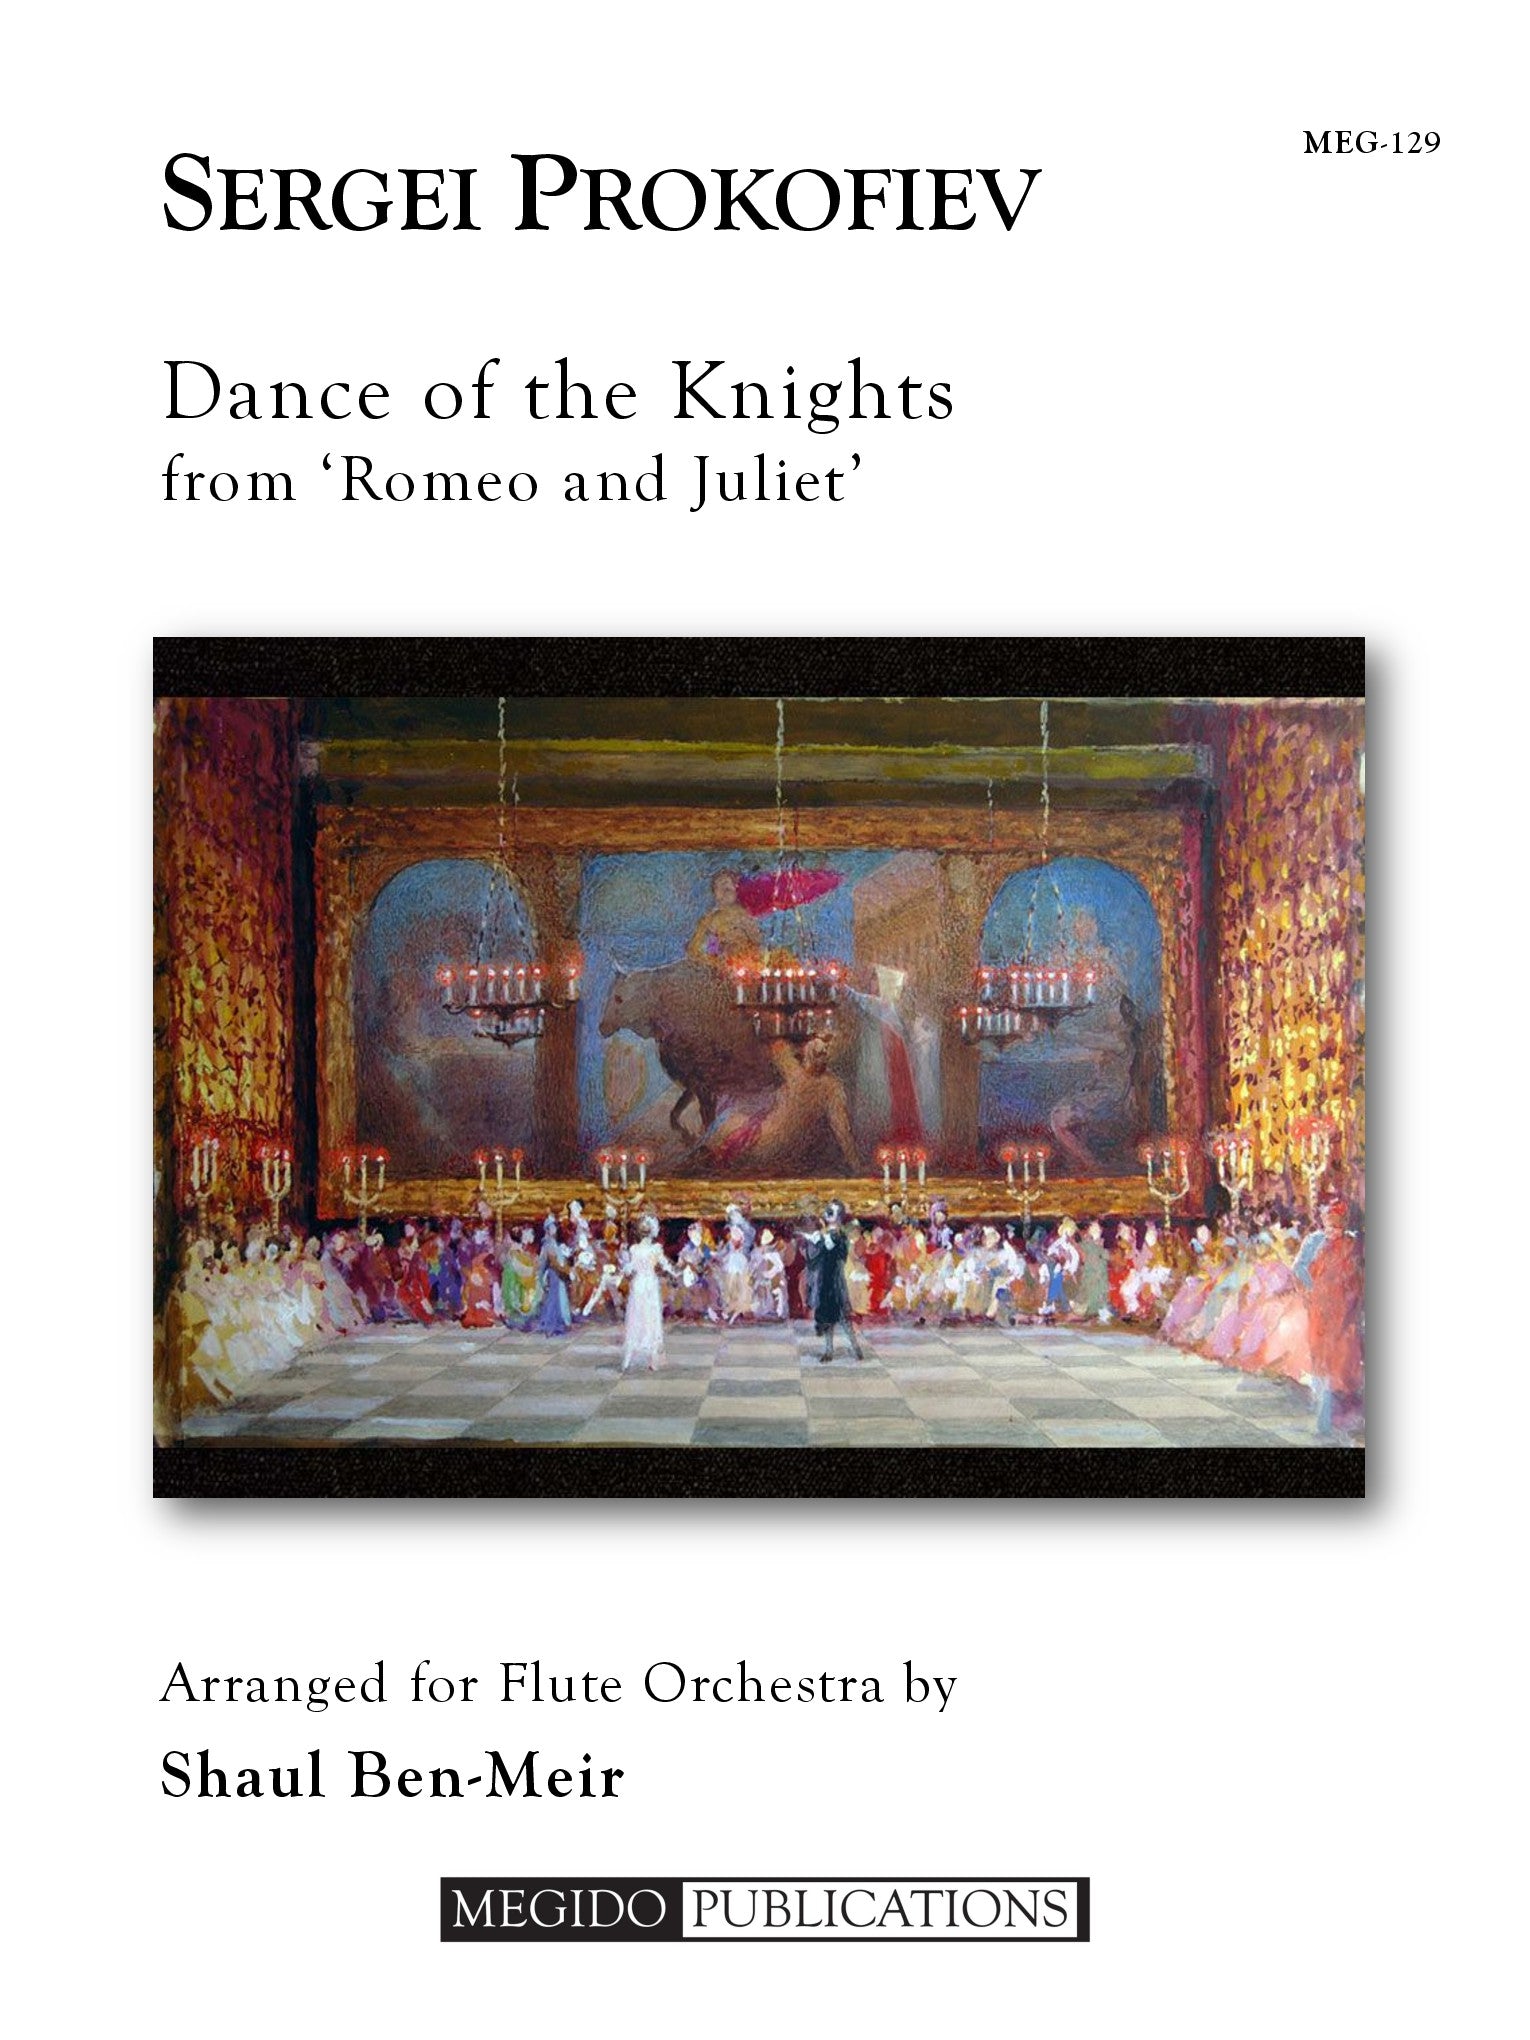 騎士たちの踊り「ロメオとジュリエット」より（セルゲイ・プロコフィエフ）（フルート十一重奏）【Dance of the Knights from Romeo and Juliet】